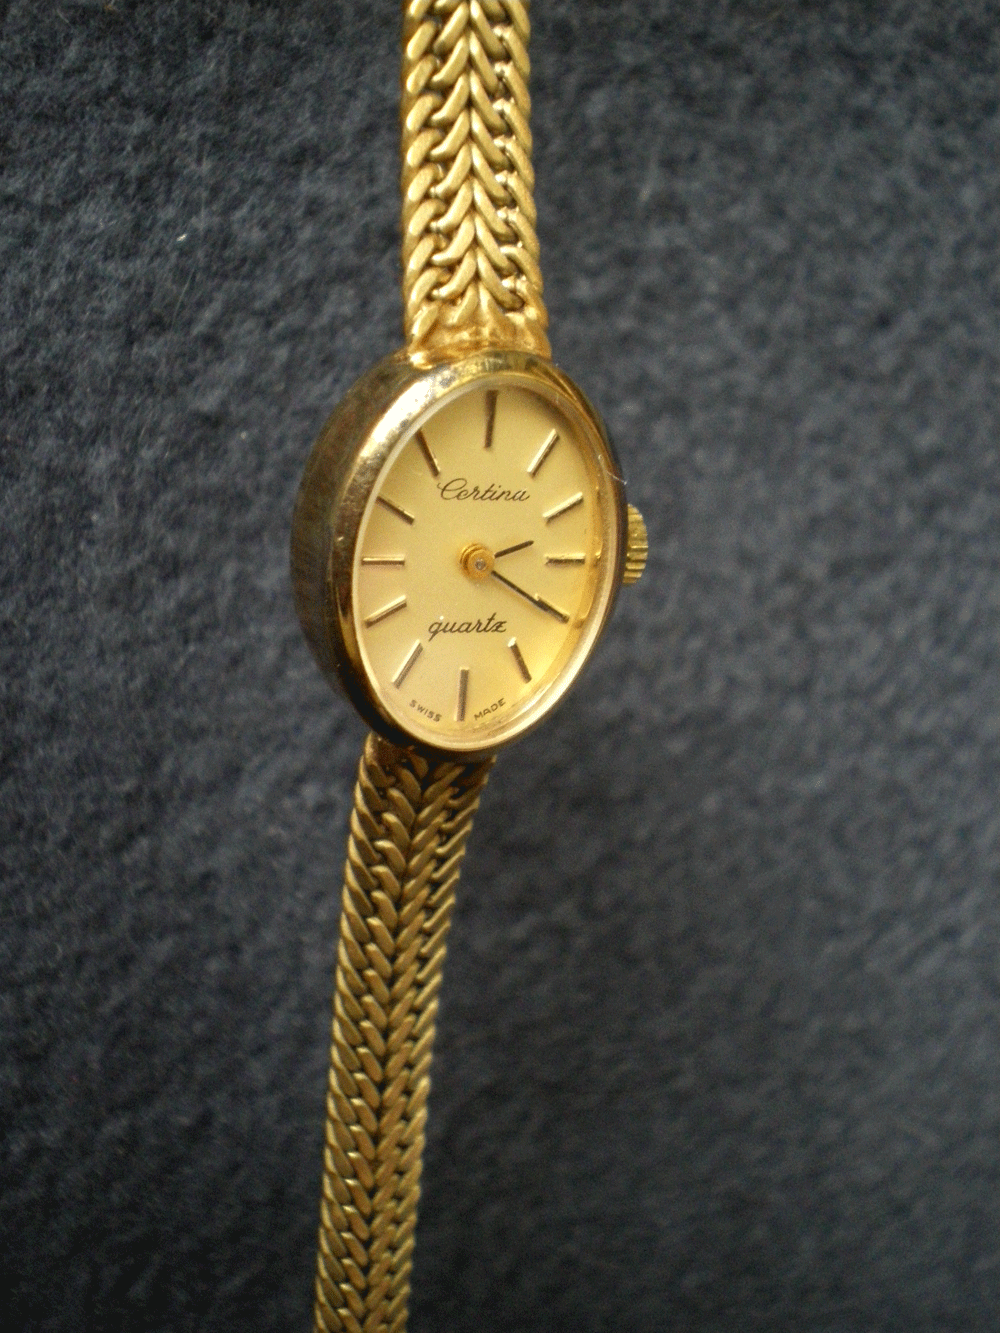 Damen-Armbanduhr, 585/- GG, Certina Quartz swiss made, 19,85g